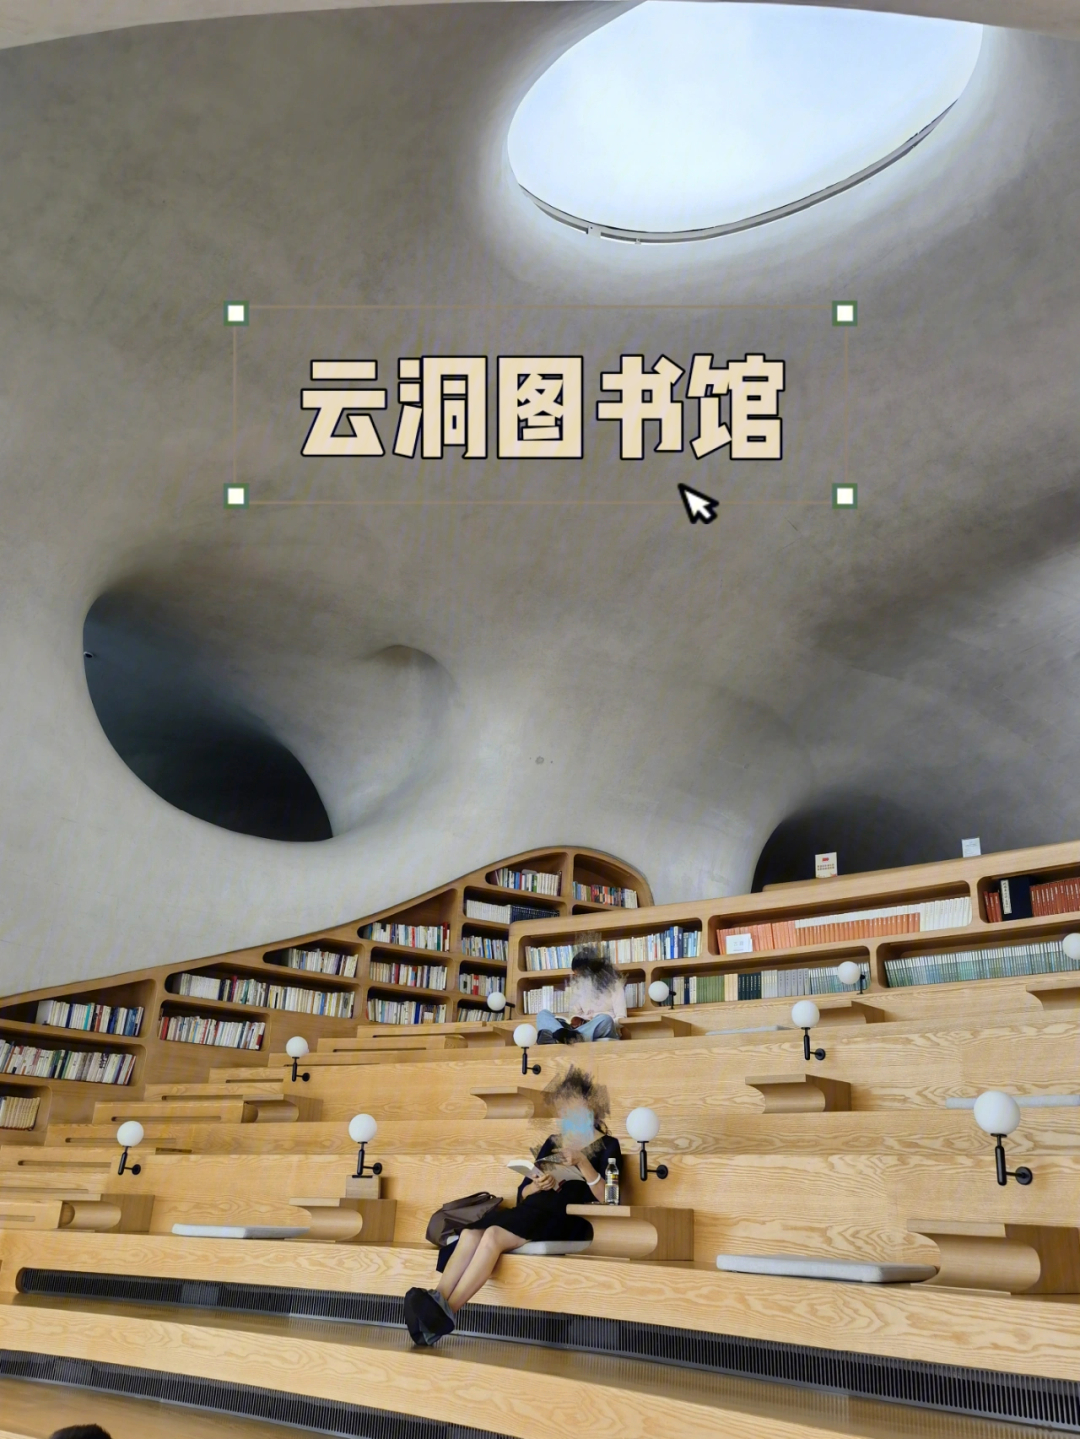 的云洞图书馆,为海口市民及游客带来更独特的城市公共和文化空间